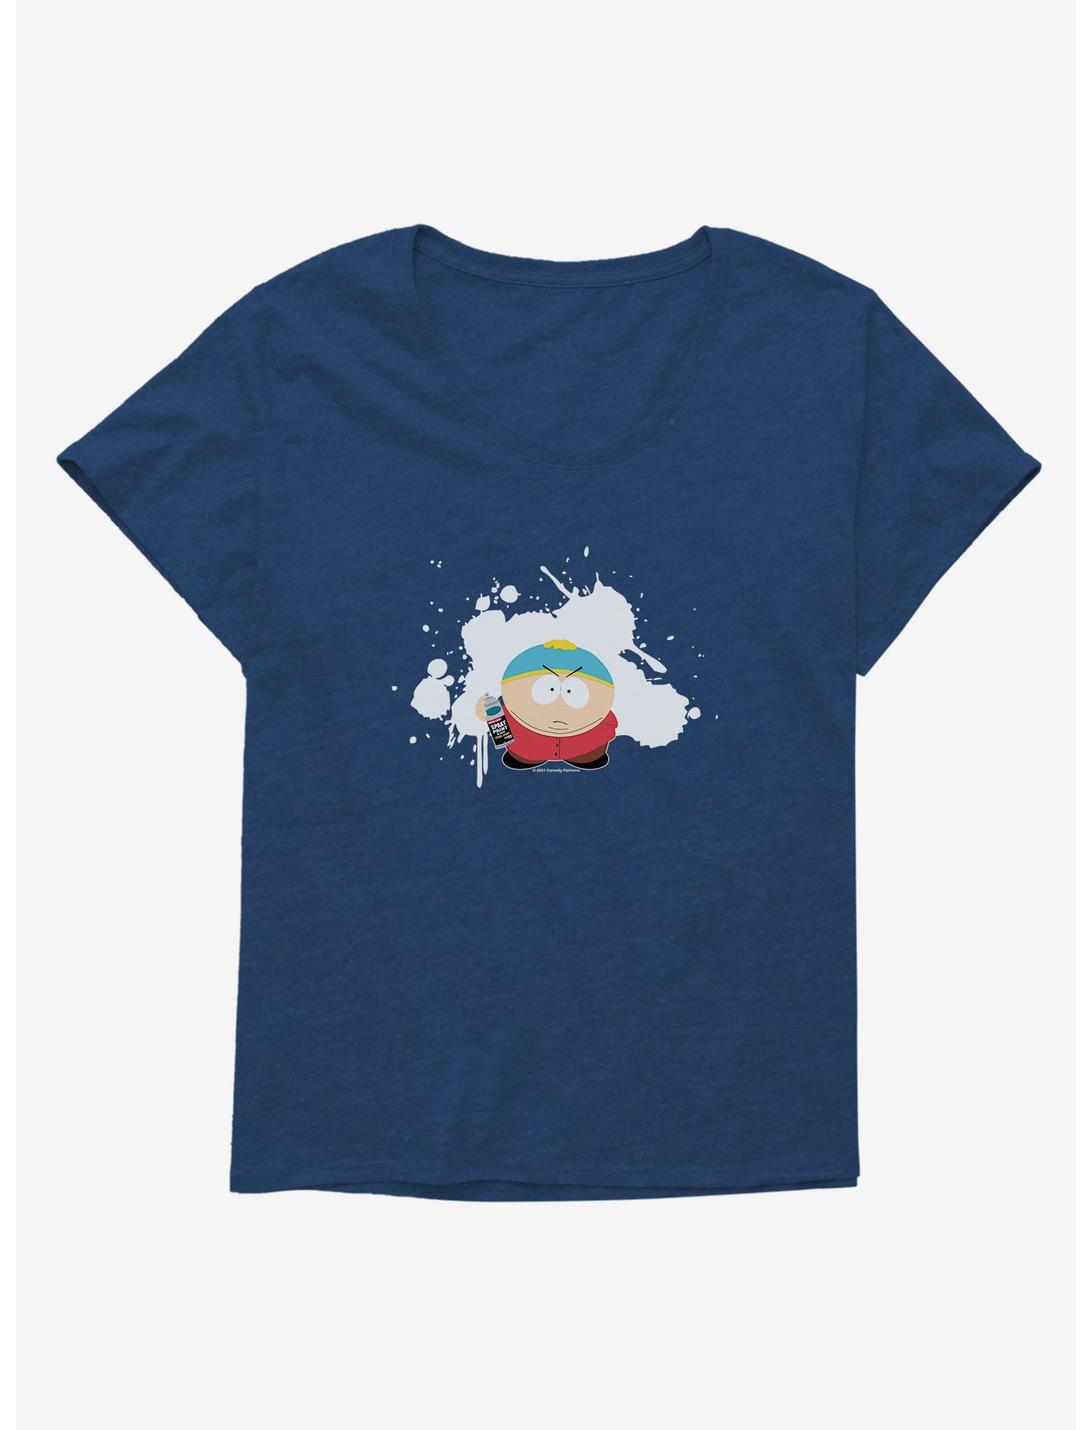 South Park Cartman Spray Paint Womens T-Shirt Plus Size, , hi-res